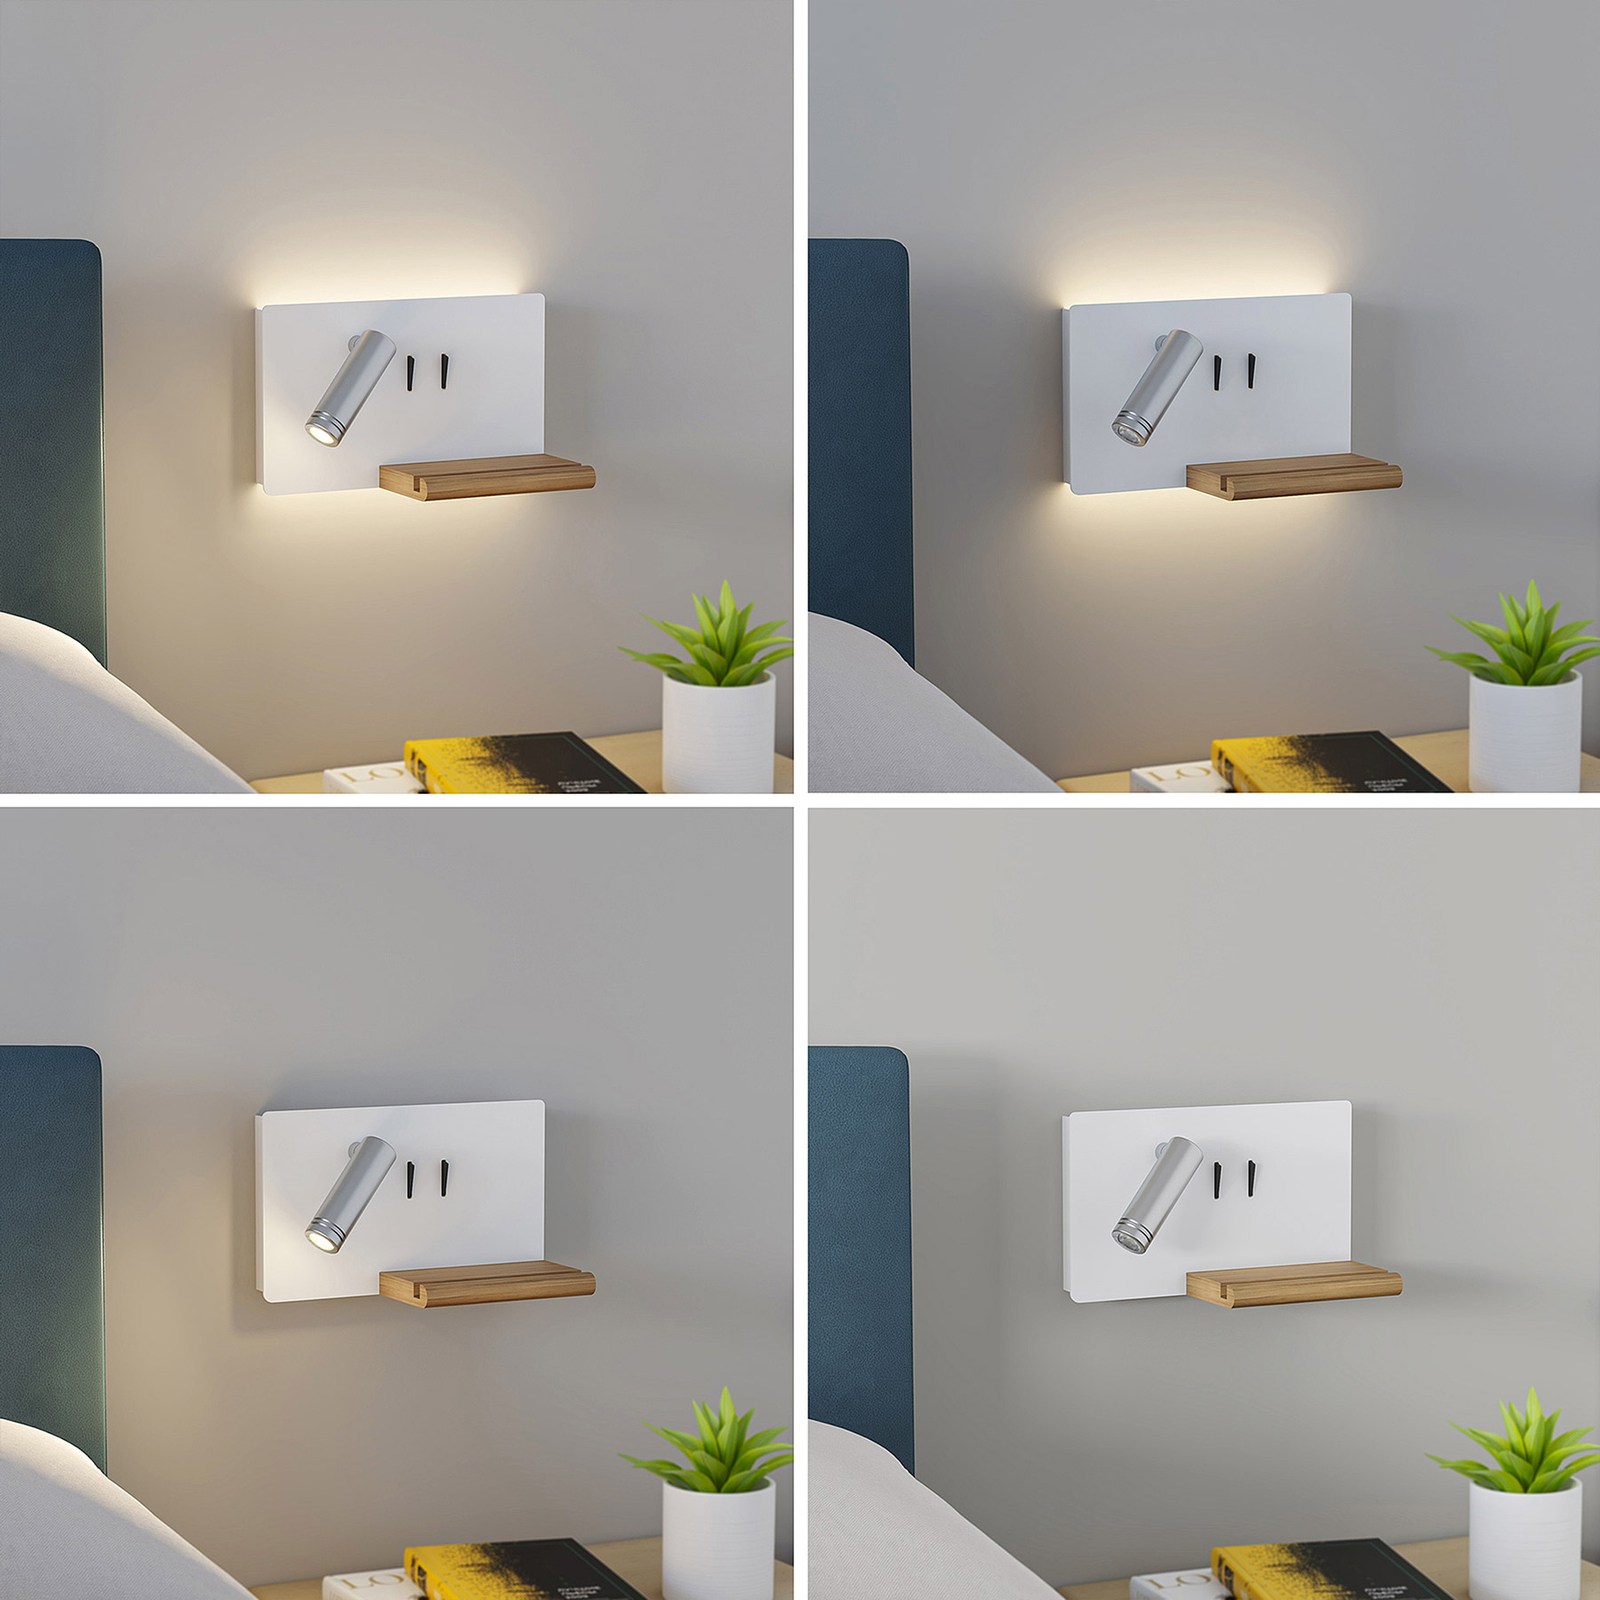 Lucande Kimo LED-vegglampe hvit/nikkel USB hylle